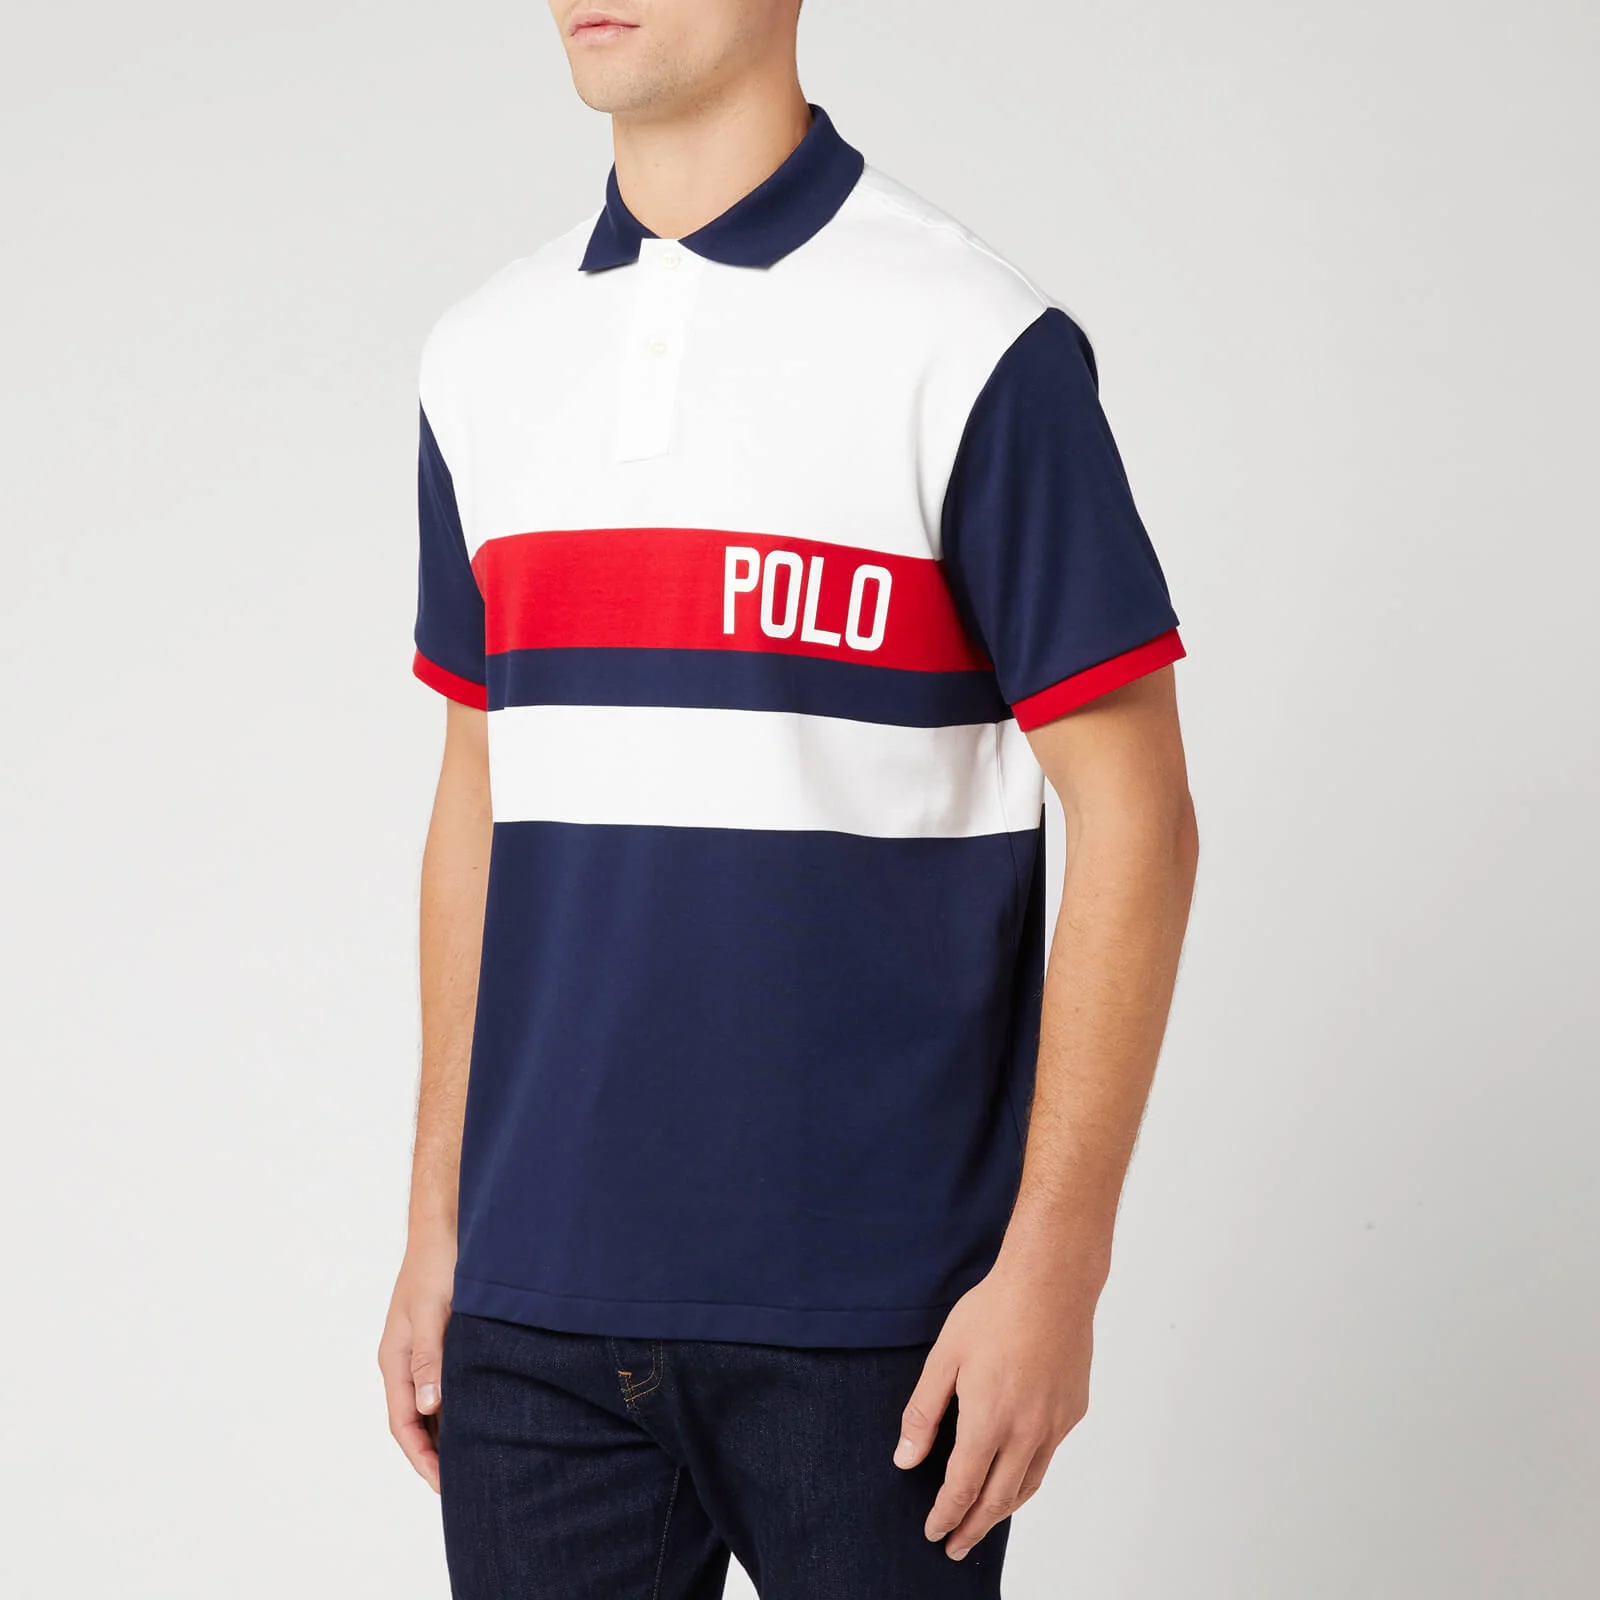 Polo Ralph Lauren Men's Short Sleeve Polo Shirt - White Multi Image 1